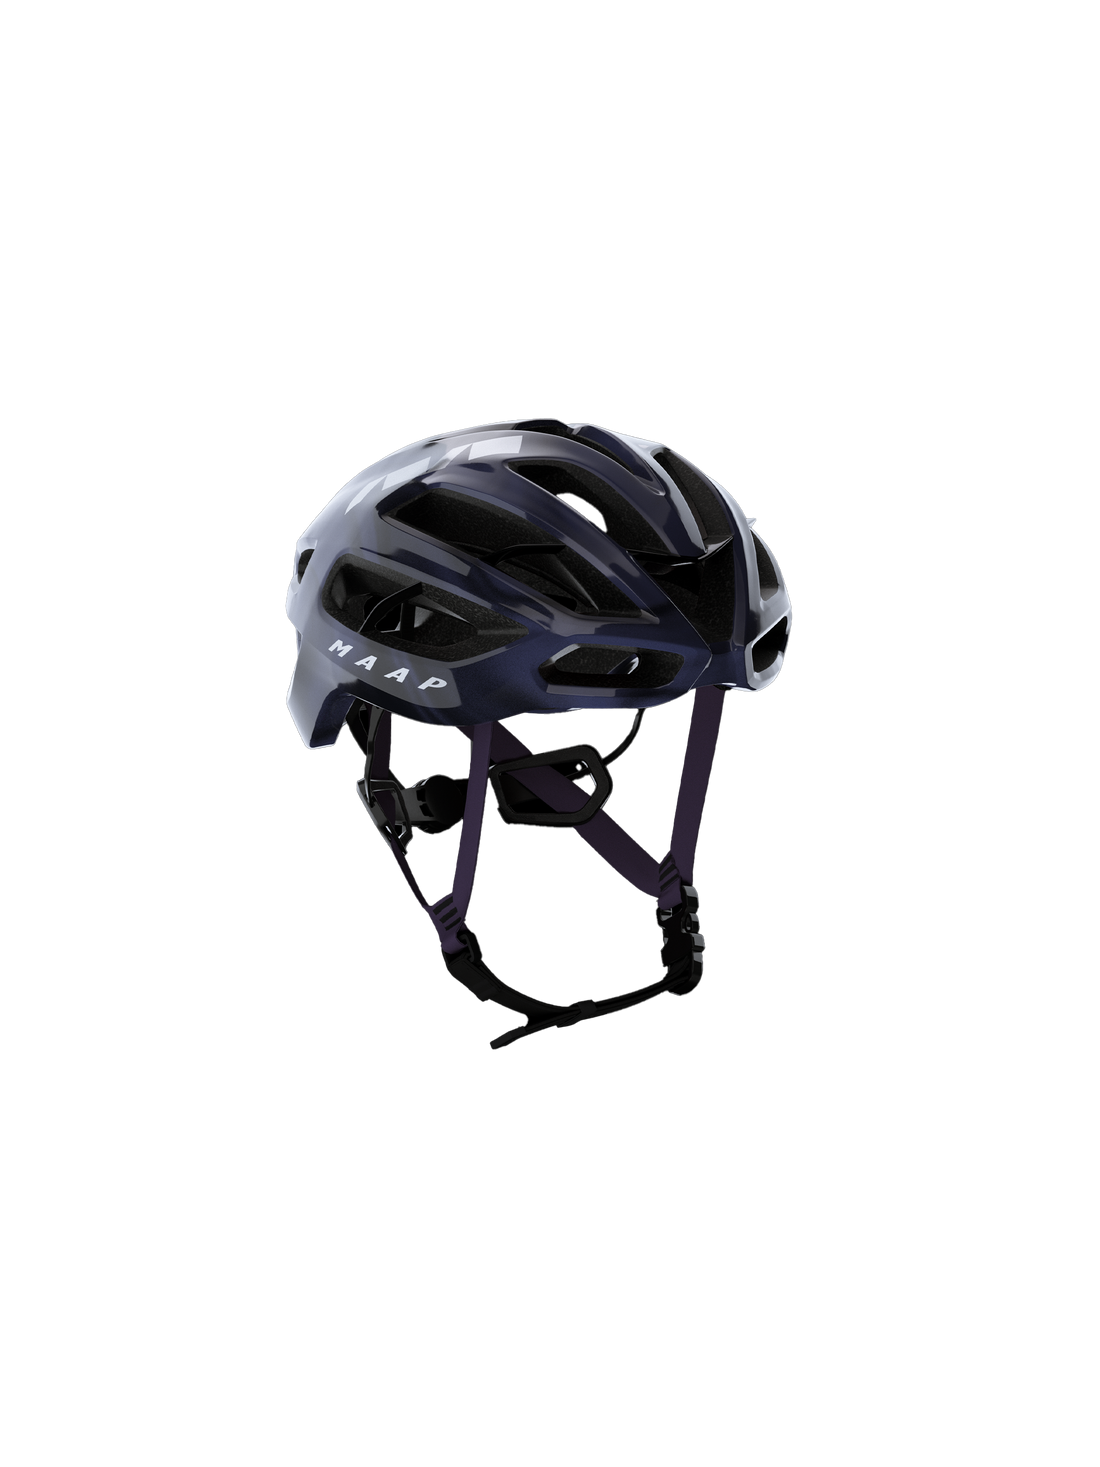 Maap x Kask Protone Icon CE Helmet  Rennradhelm Nightshade